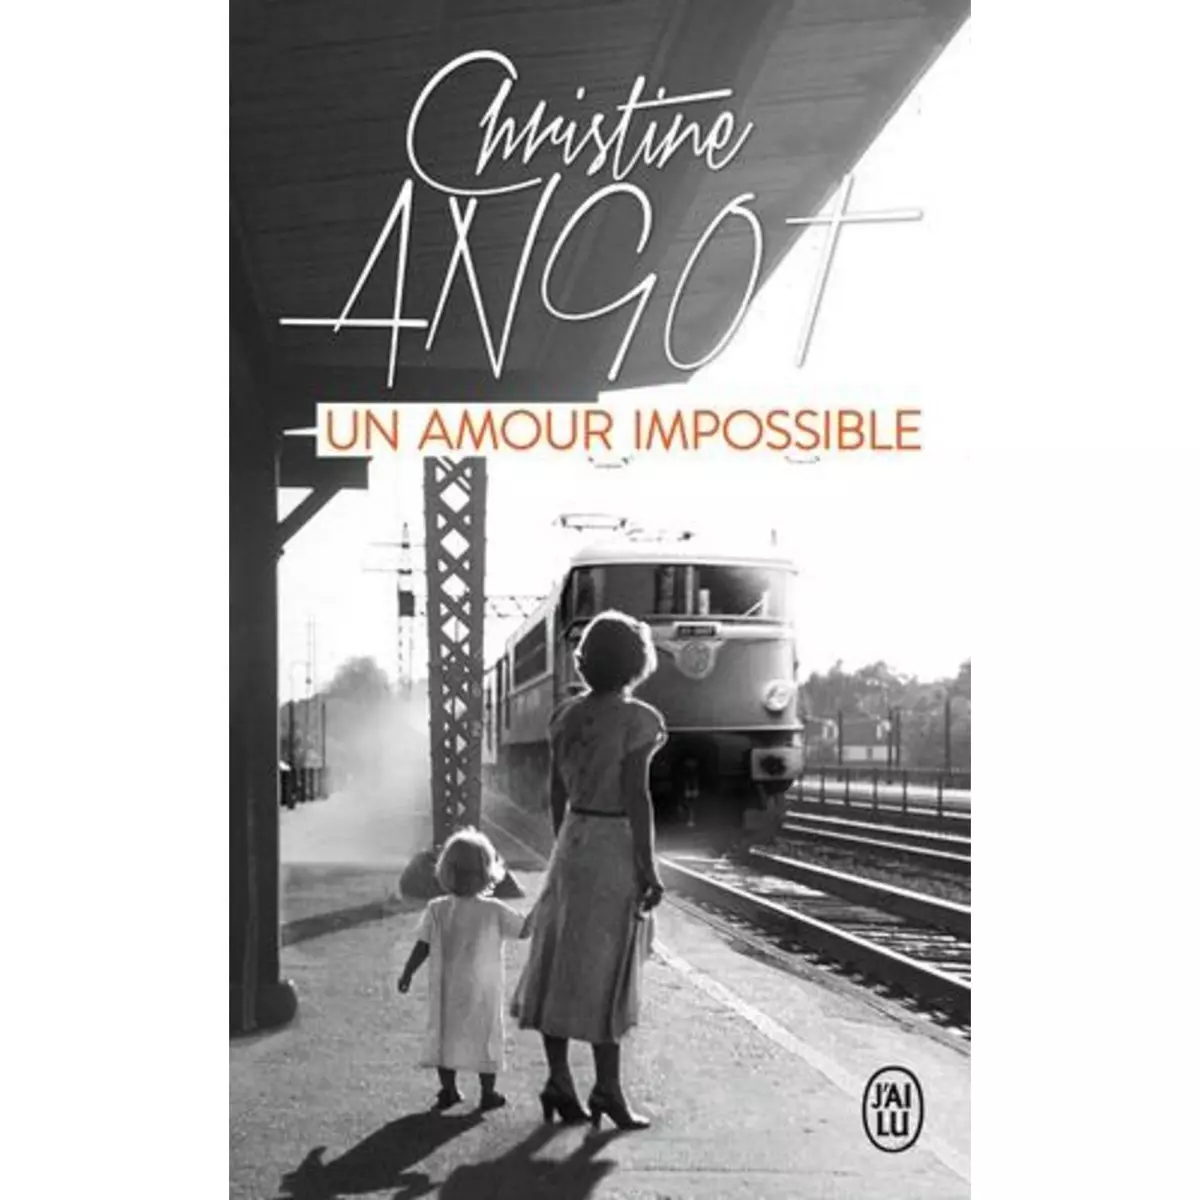  UN AMOUR IMPOSSIBLE. SUIVI DE CONFERENCE A NEW YORK, Angot Christine